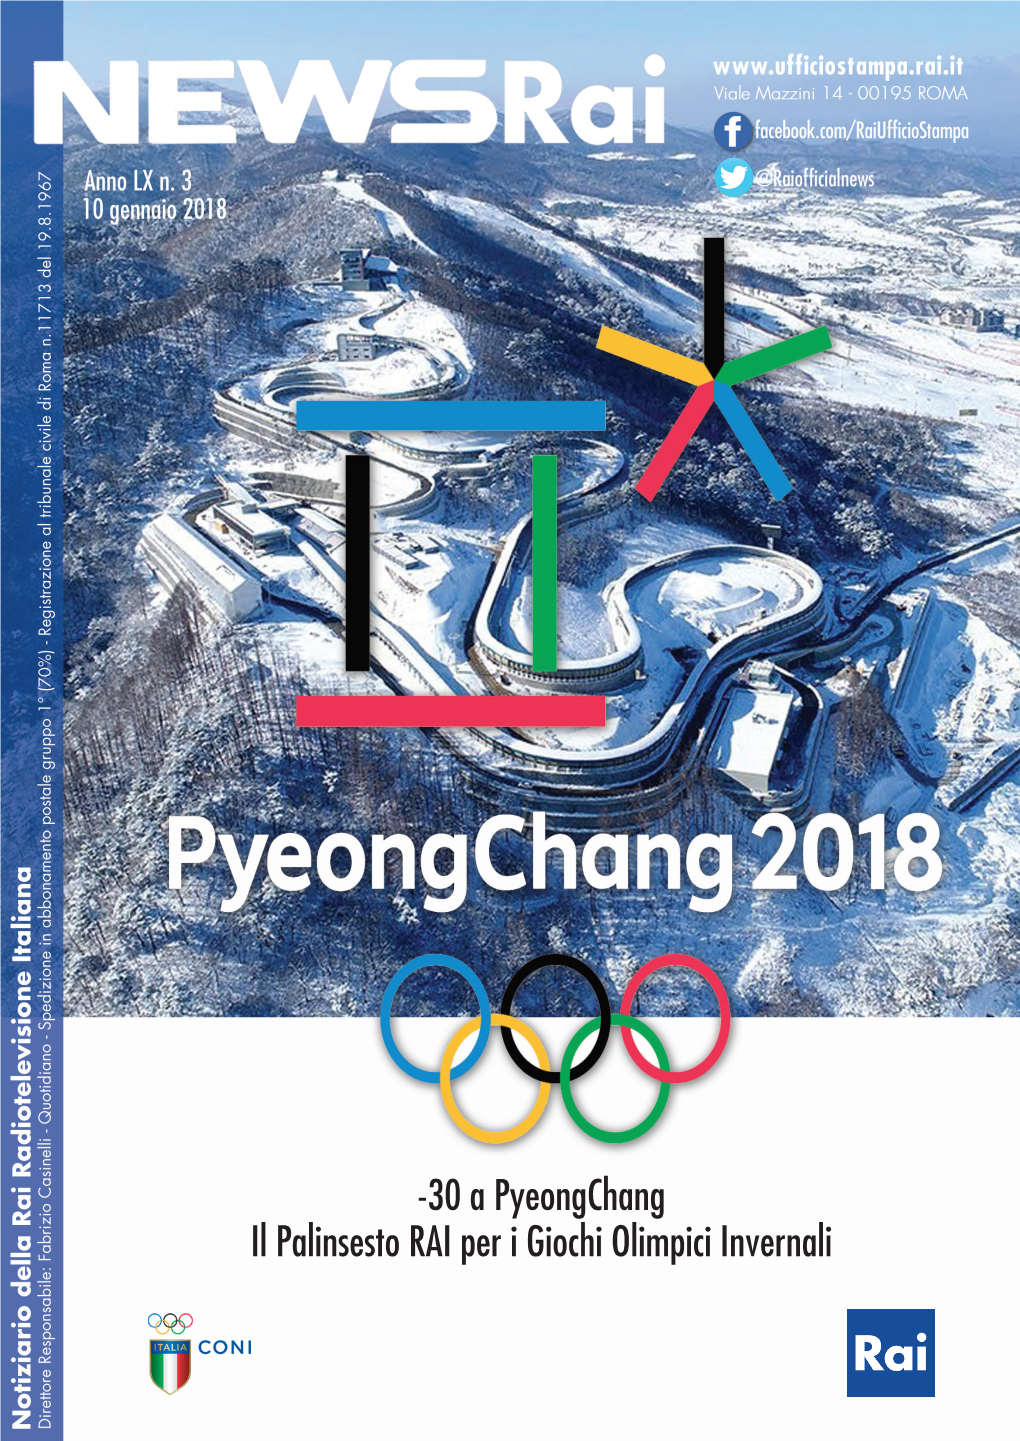 30 a Pyeongchang Il Palinsesto RAI Per I Giochi Olimpici Invernali “L’Italia È Con Voi” Pyeongchang 2018, Il Ritorno Della Rai